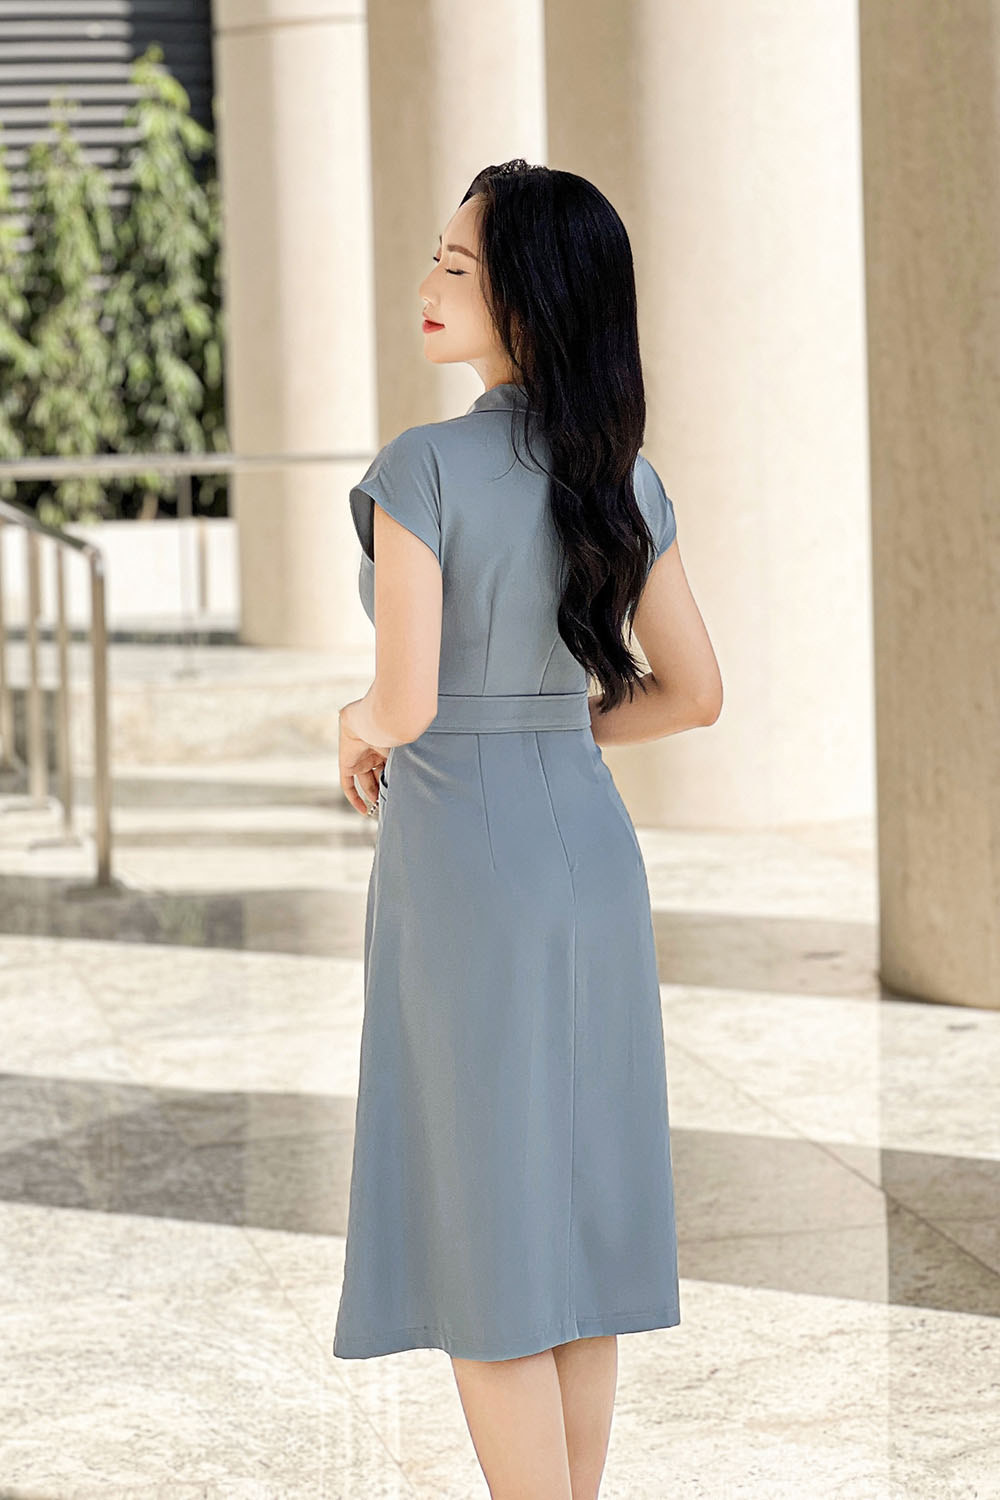 Đầm công sở xếp ly màu xanh cổ tim KK165-13 | Thời trang công sở K&K Fashion